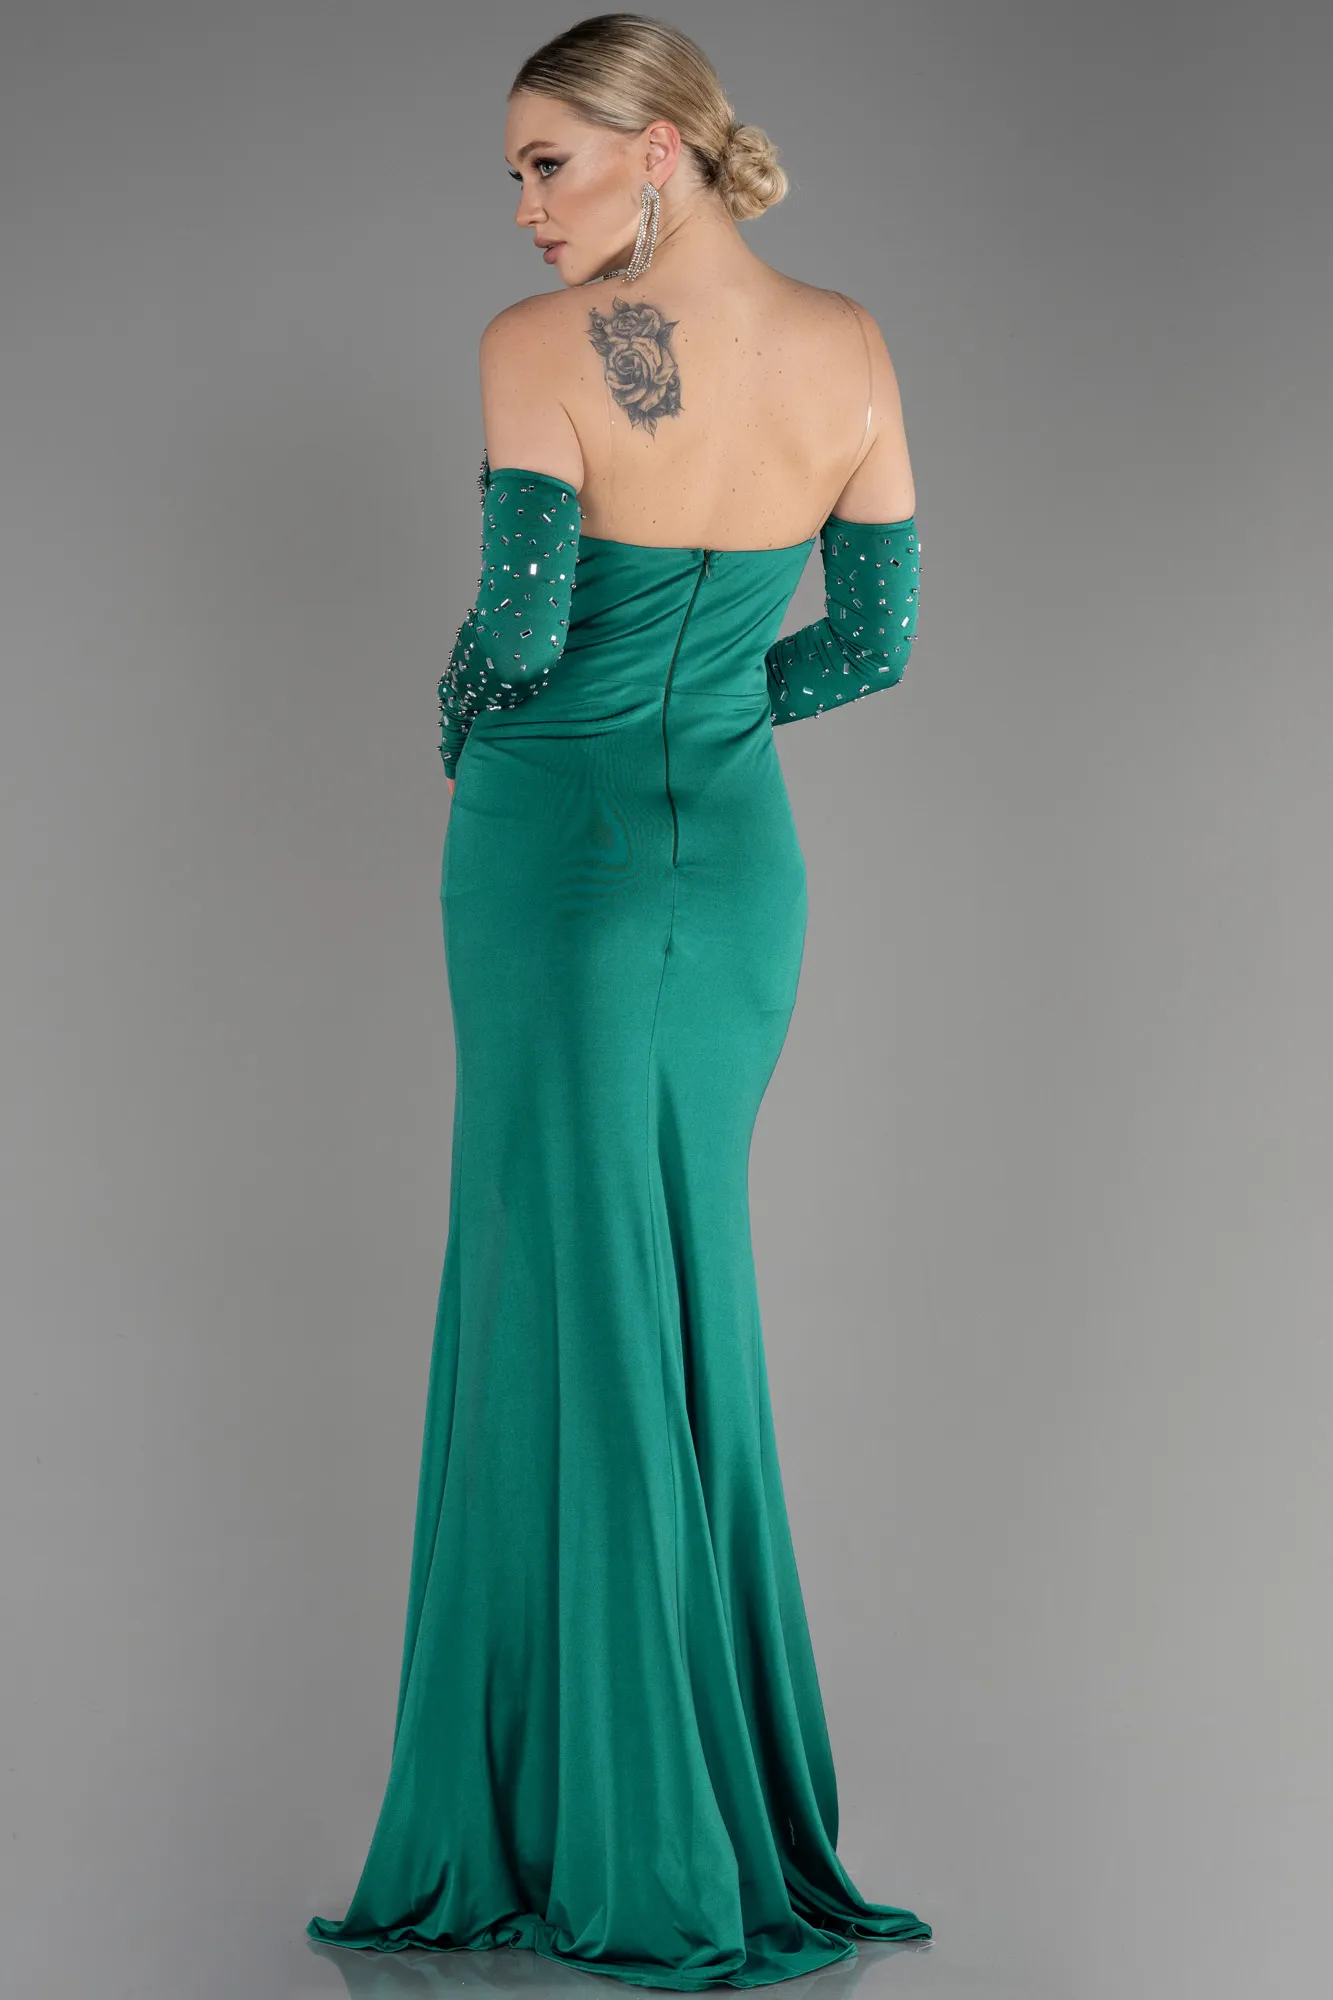 Emerald Green-Strapless Long Evening Dress ABU3824